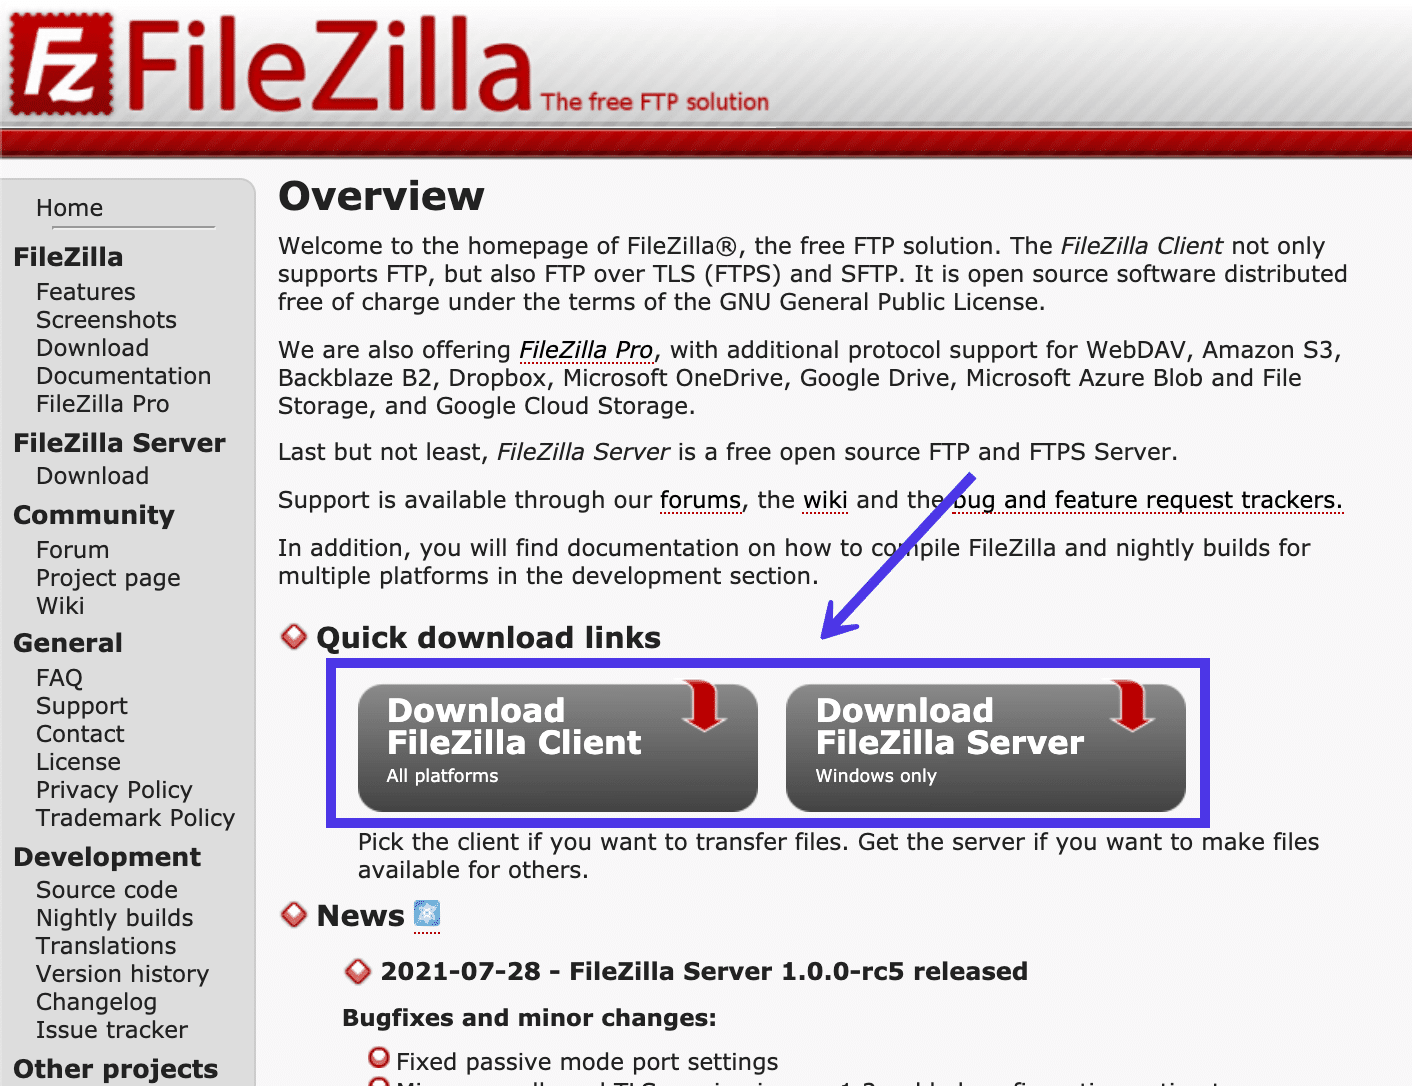 Klik op de knop Download FileZilla Client om het installatieproces te starten.